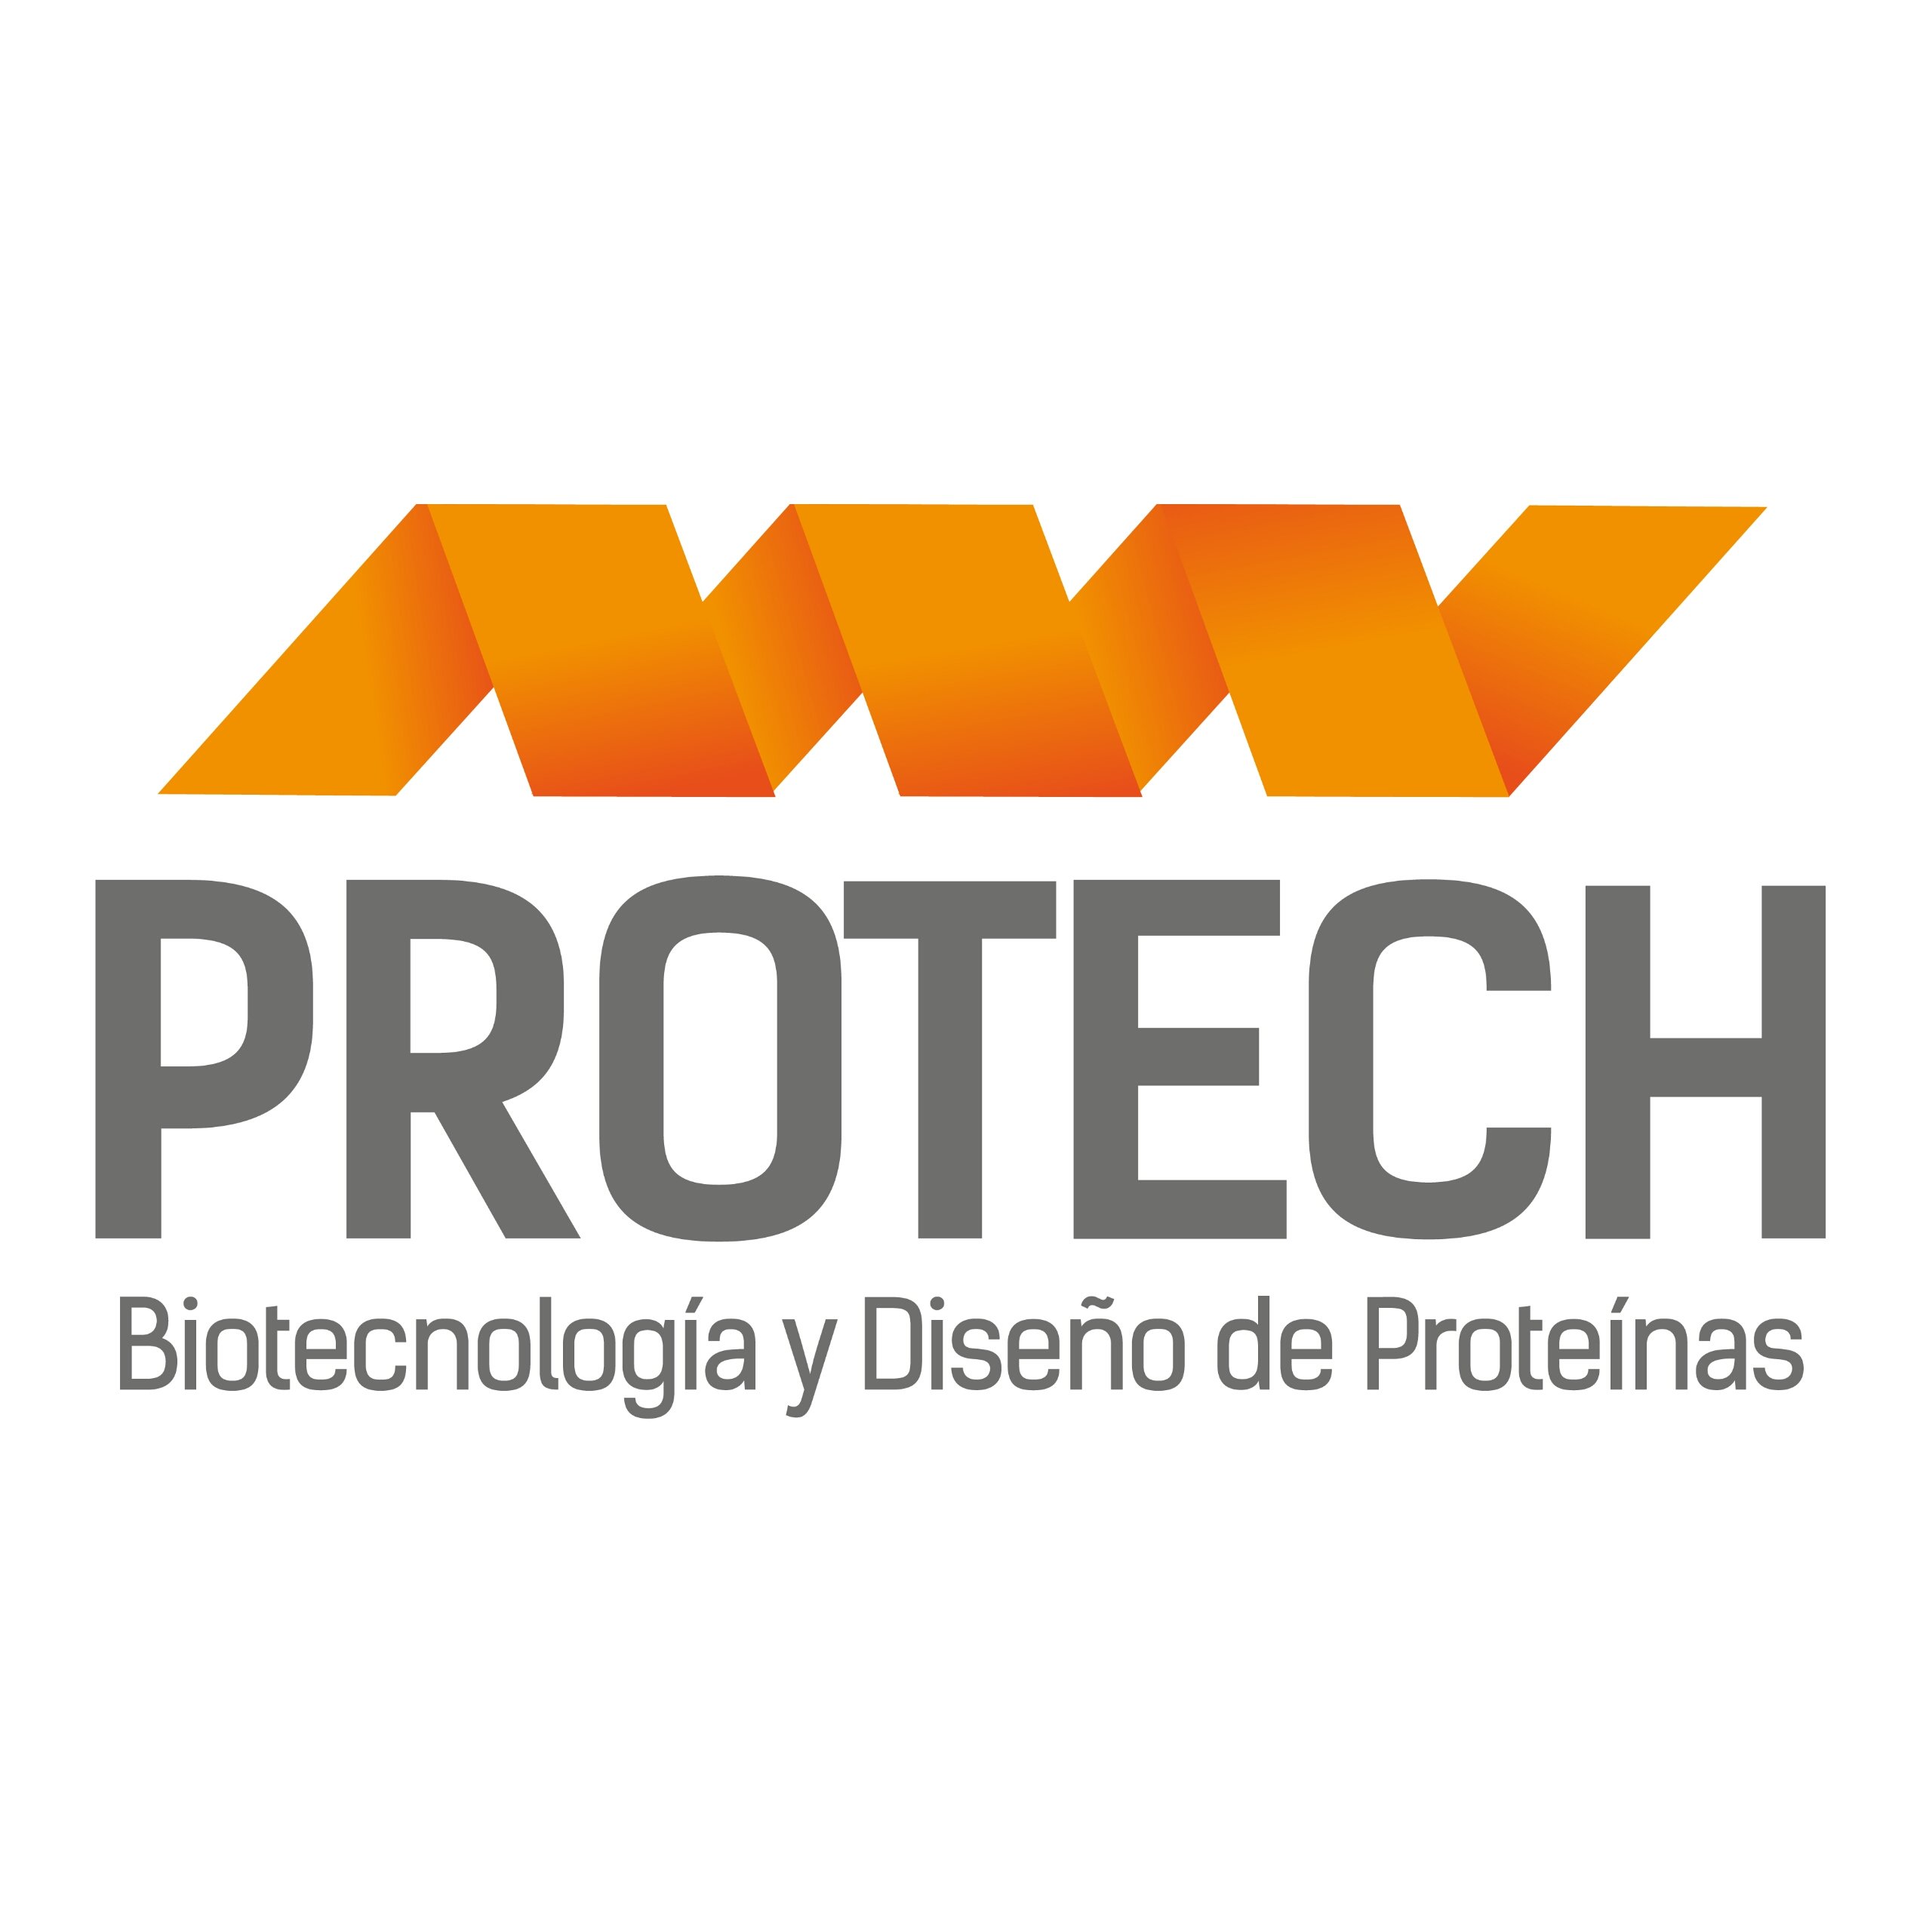 Laboratorio de biotecnología, diseño y producción de proteínas. Universidad de TALCA. Director: @marenas5000